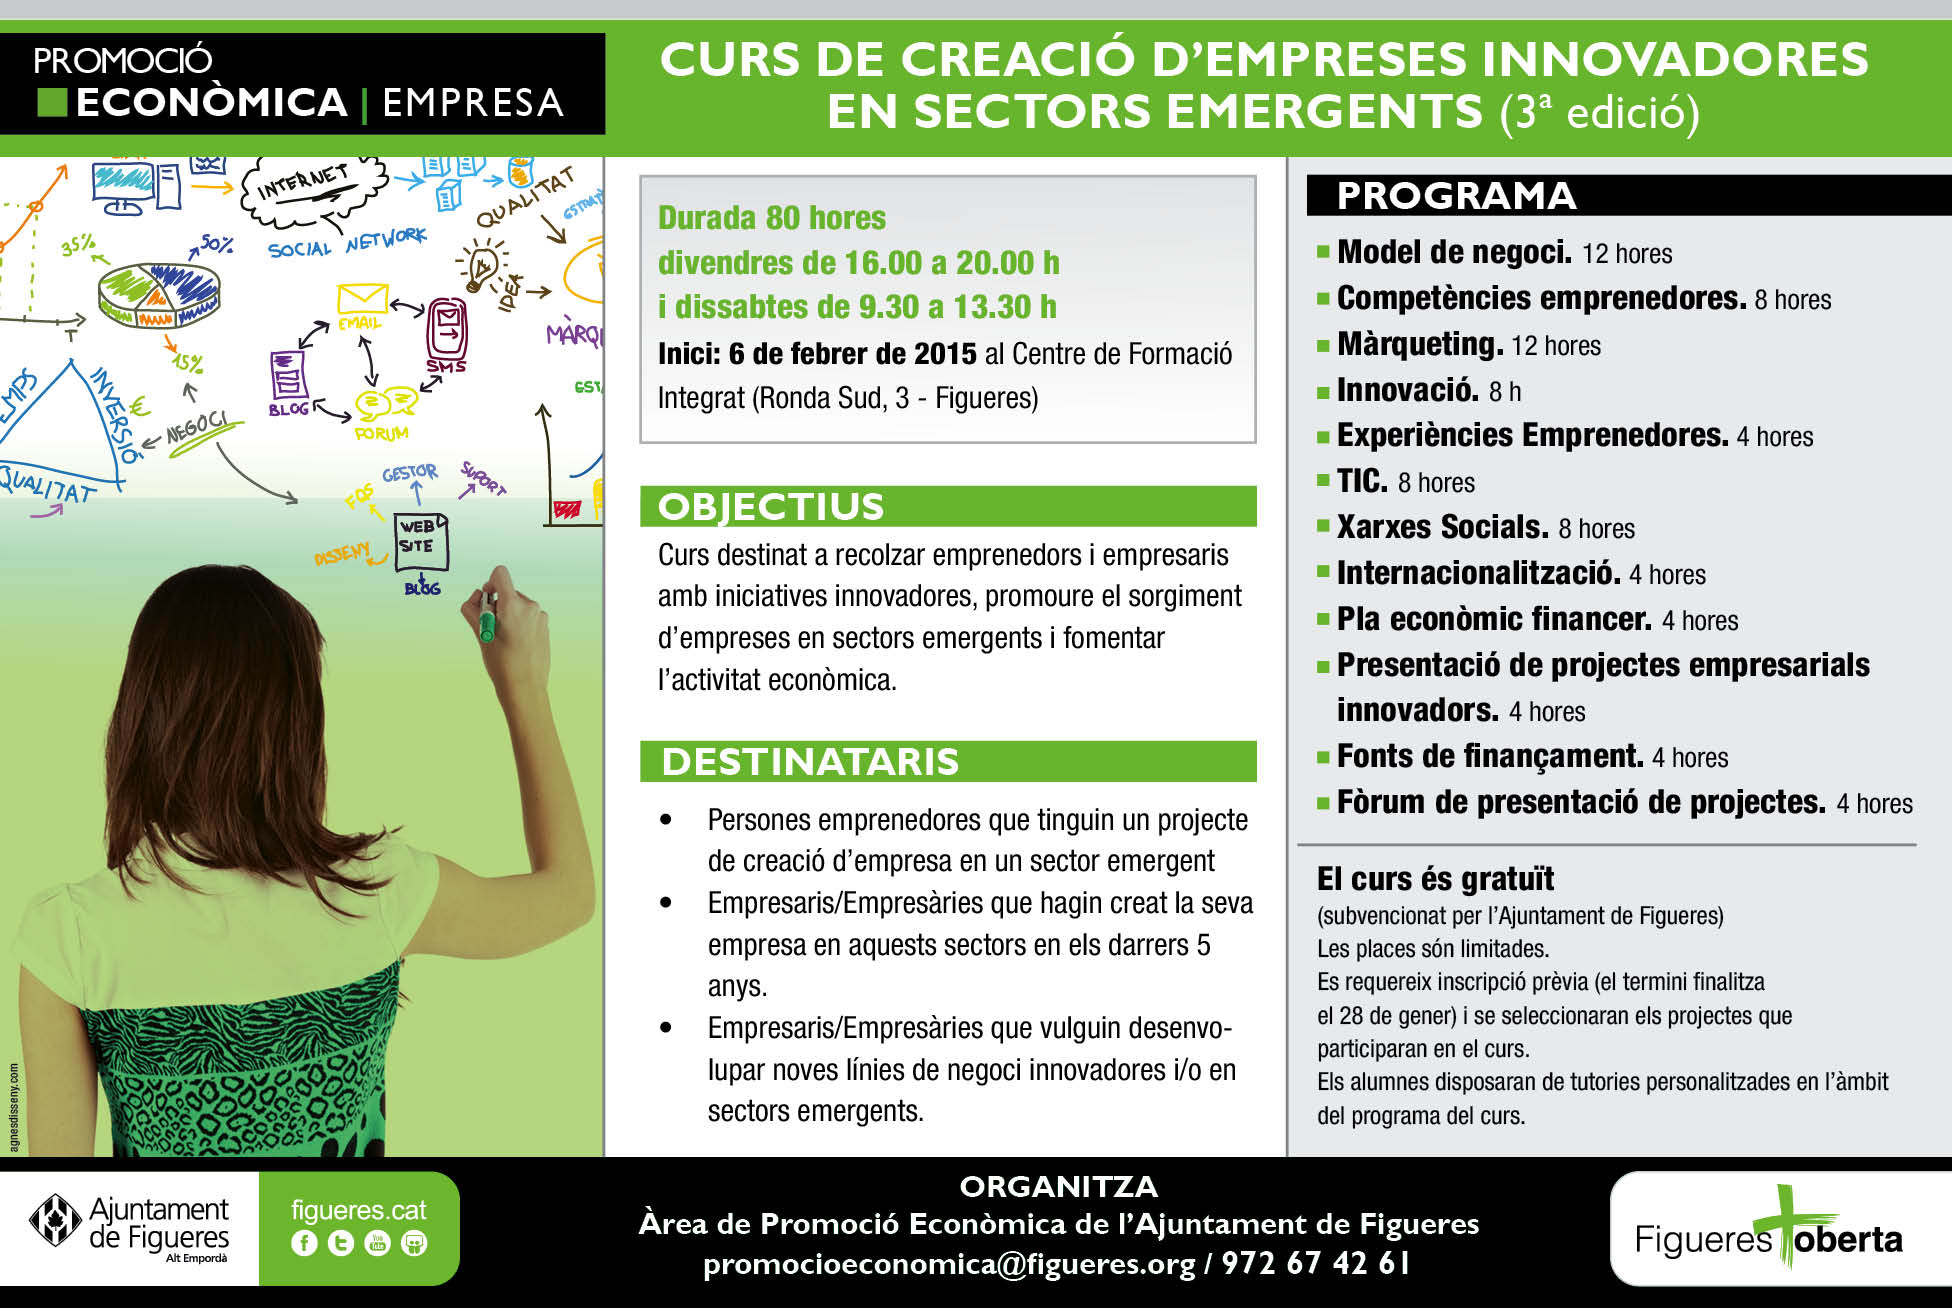 Curs de creació empreses innovadores en sectors emergents - Ajuntament de Figueres